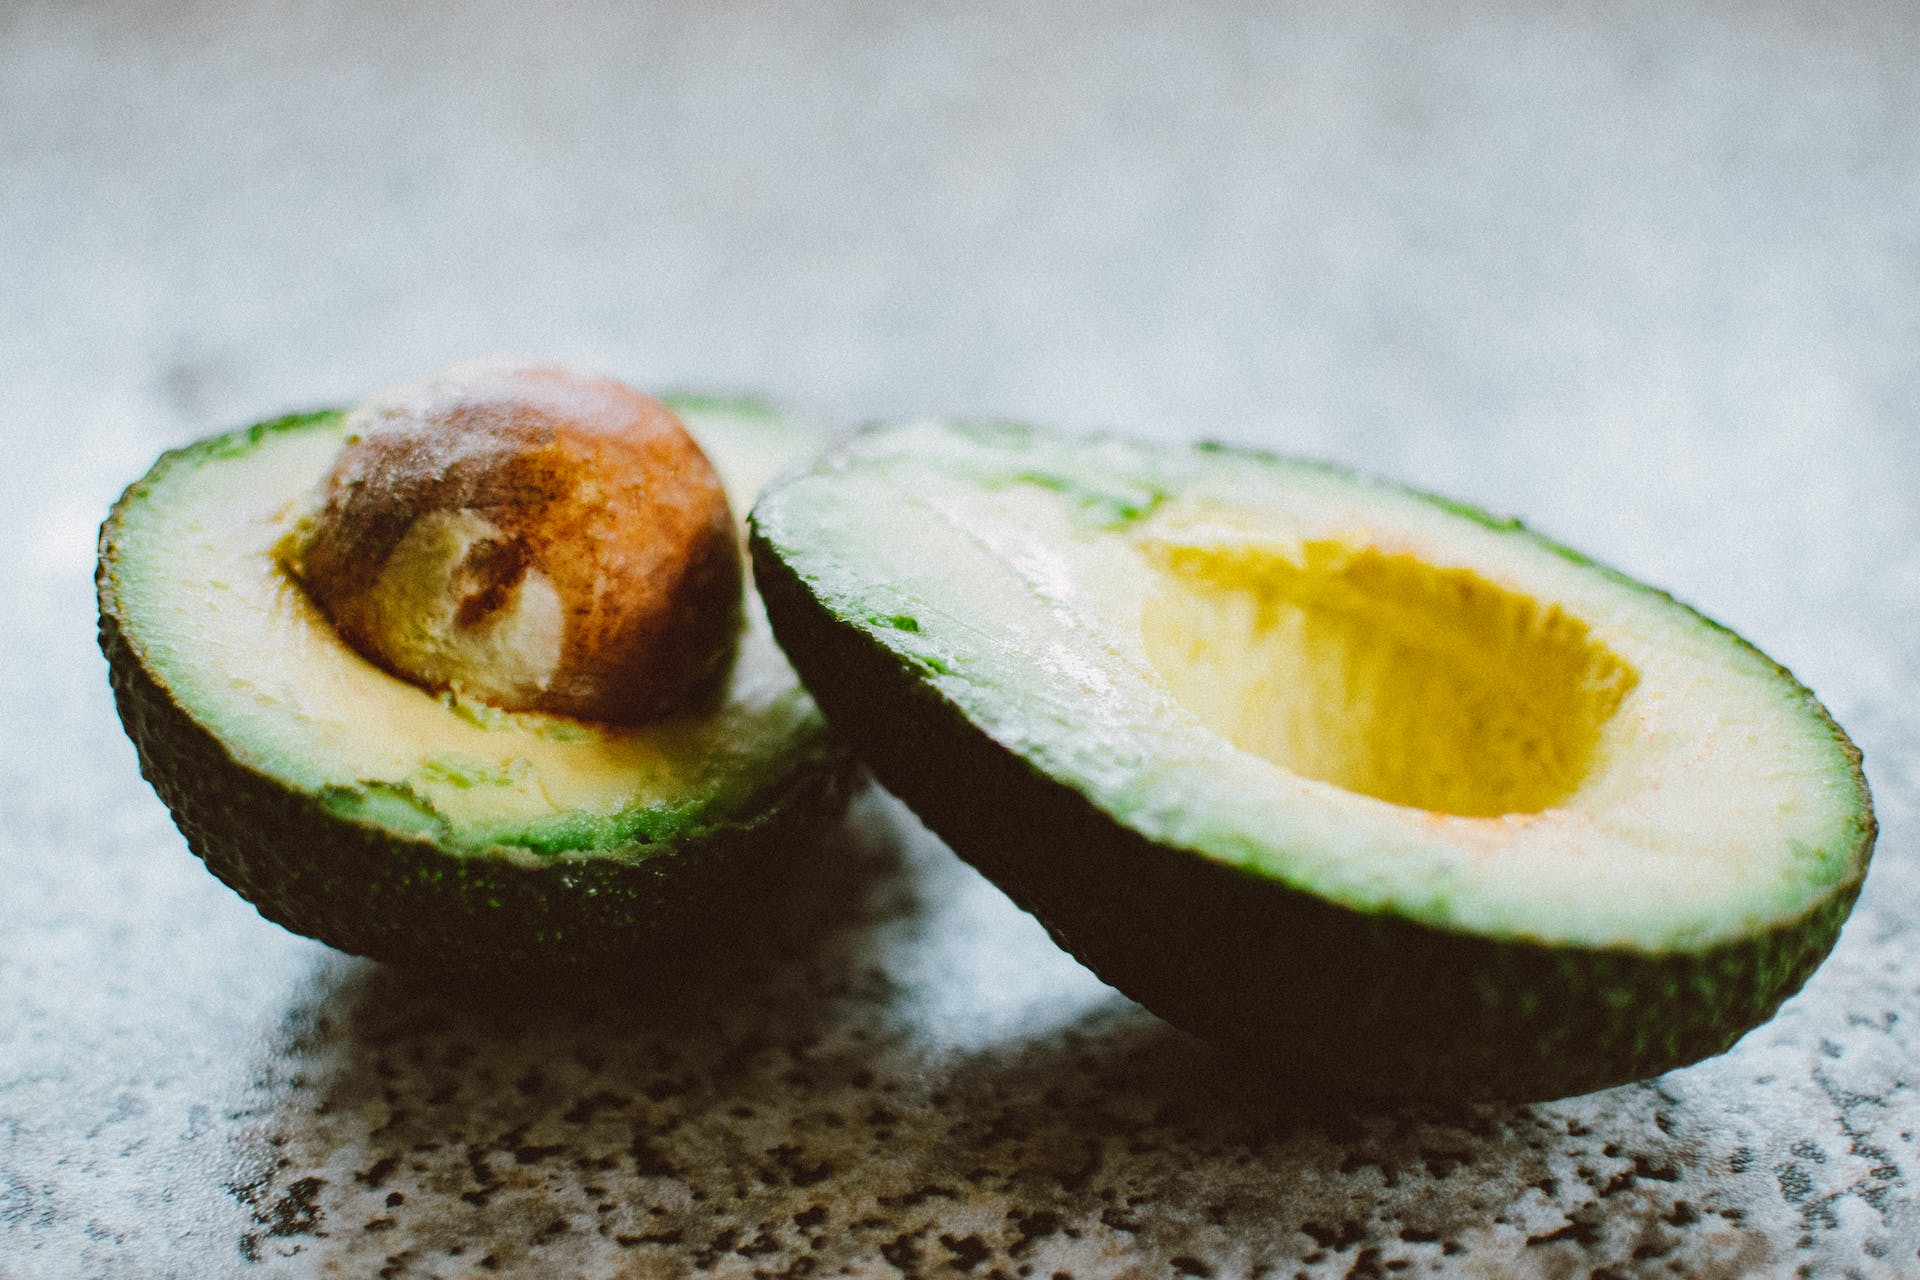 A sliced avocado | Source: Pexels